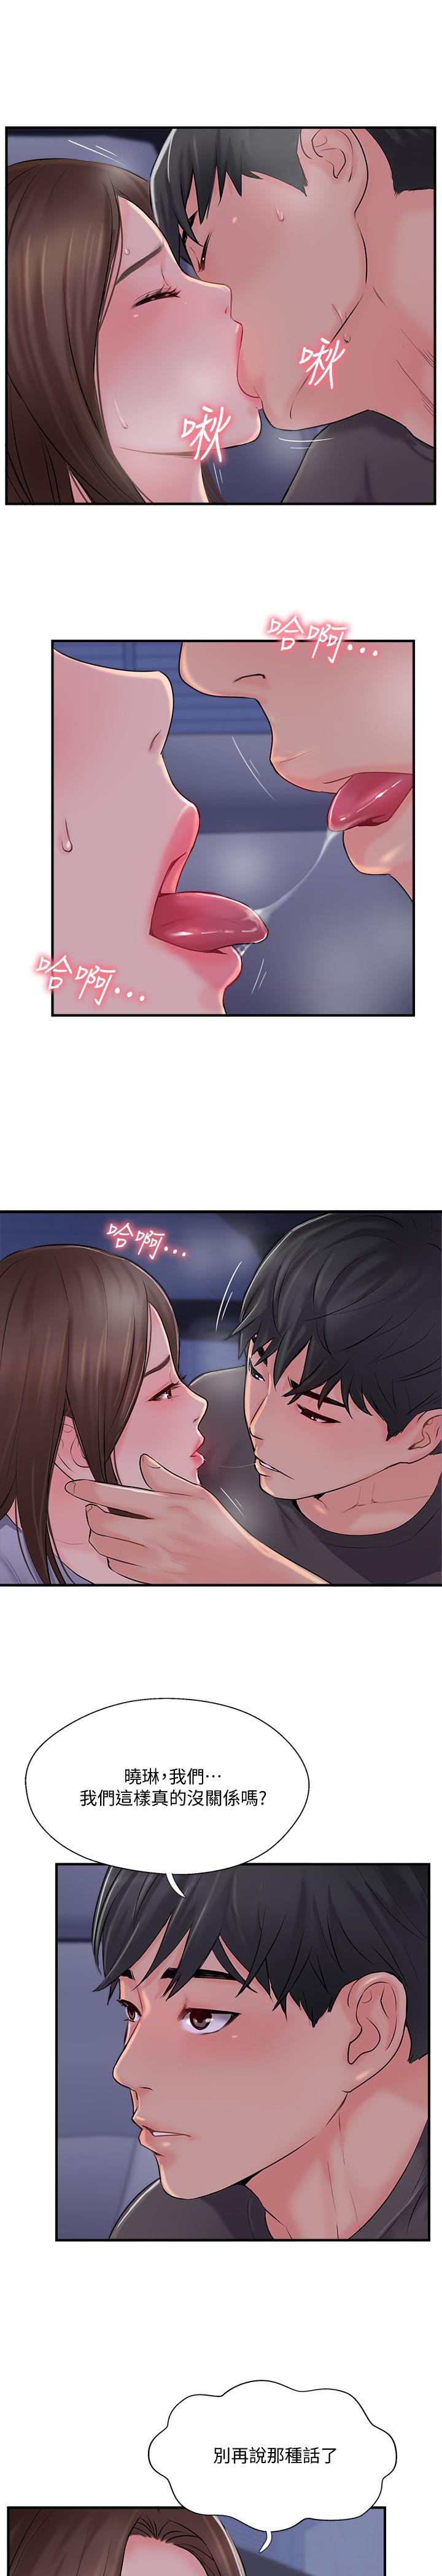 韩国污漫画 完美新伴侶 第15话-让我看看你的私密处 2